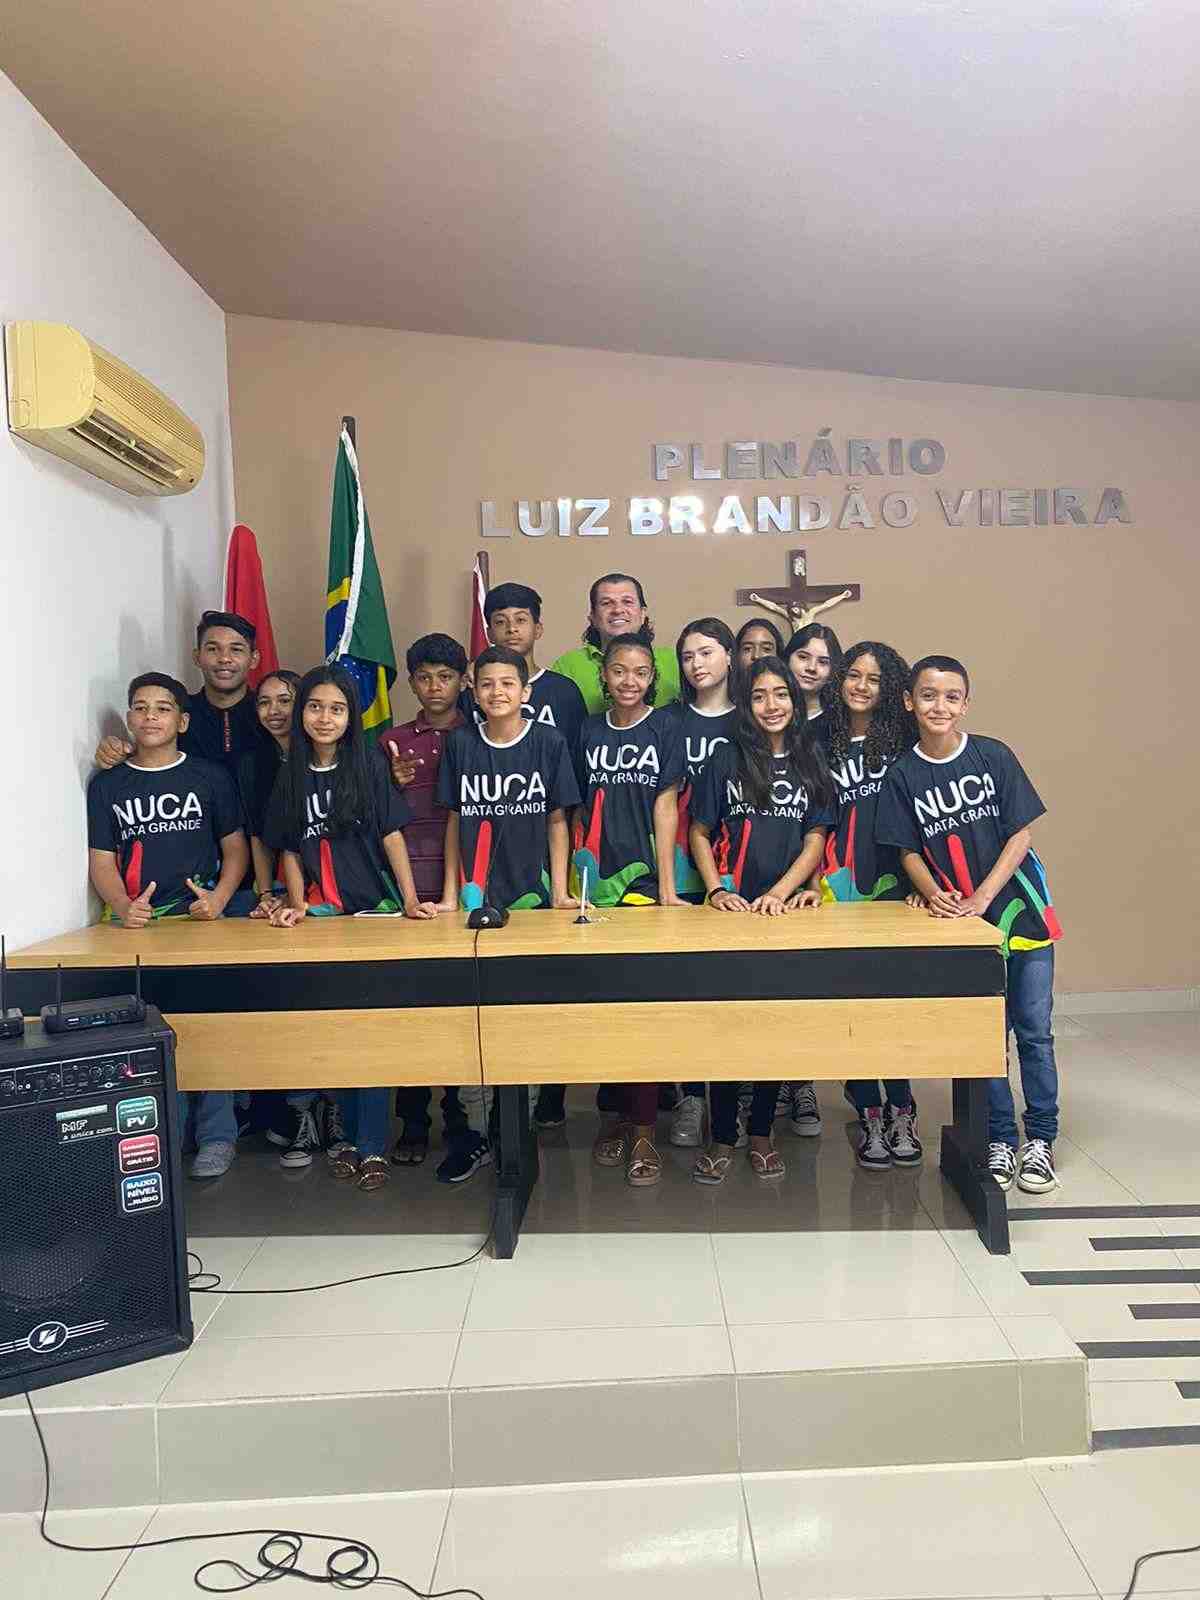 Grupo de jovens reunidos em uma sala. Ao fundo, há bandeiras penduradas em pedestal e lê-se "Plenária Luiz Brandão Vieira"